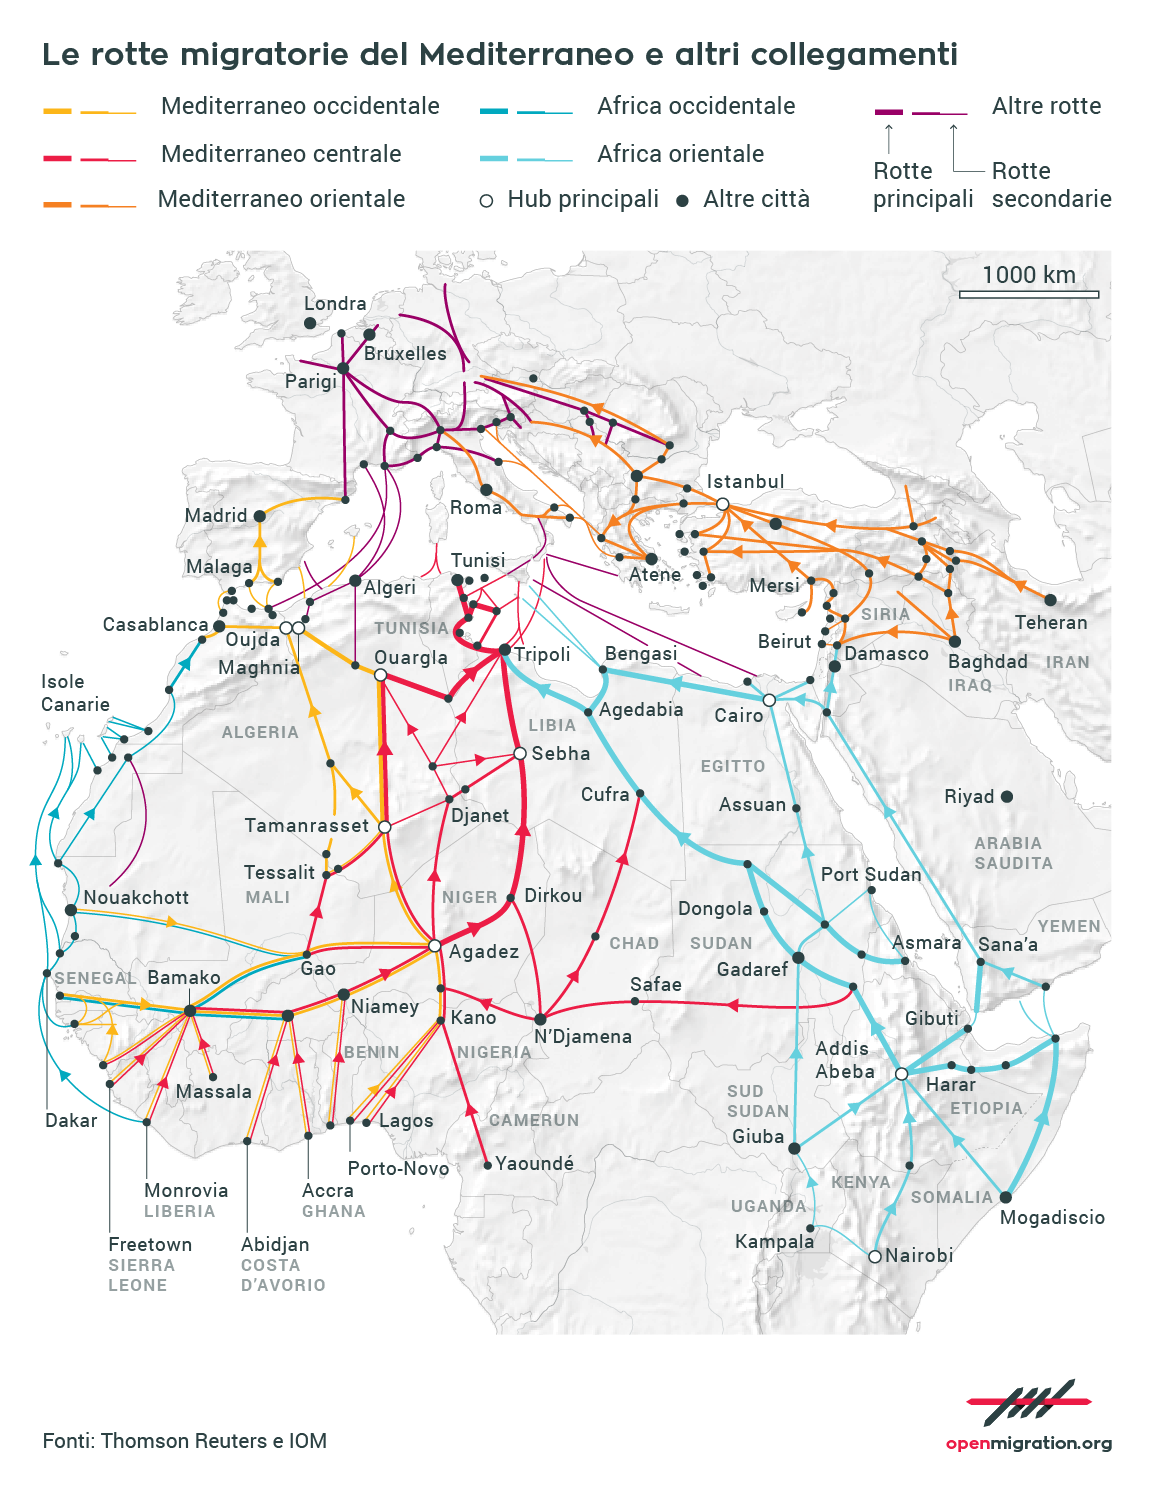 Le rotte migratorie del Mediterraneo e altri collegamenti